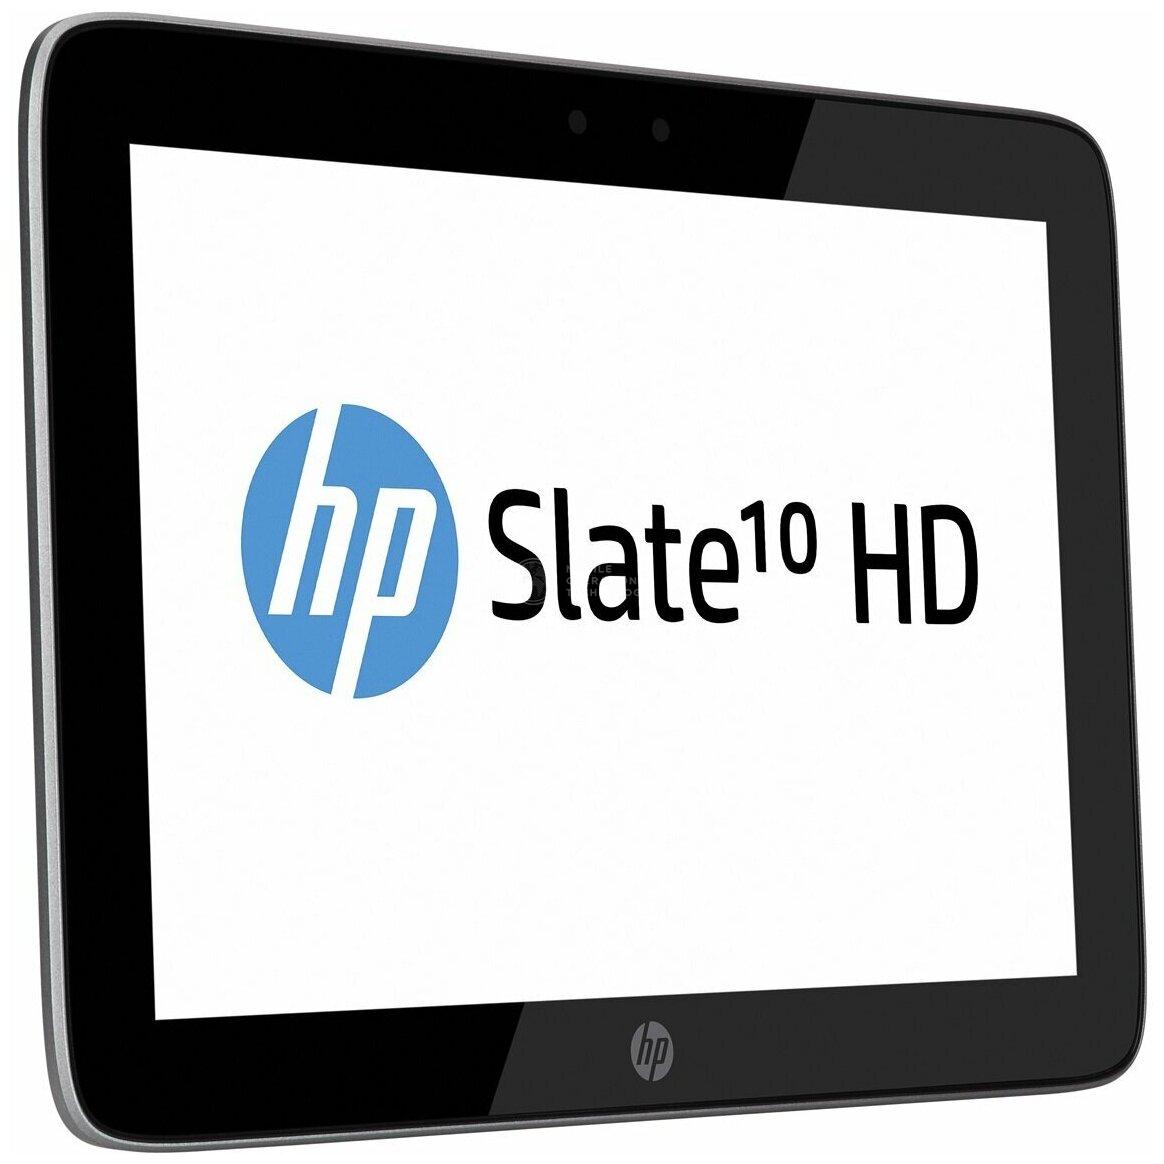 Slate 10 HD